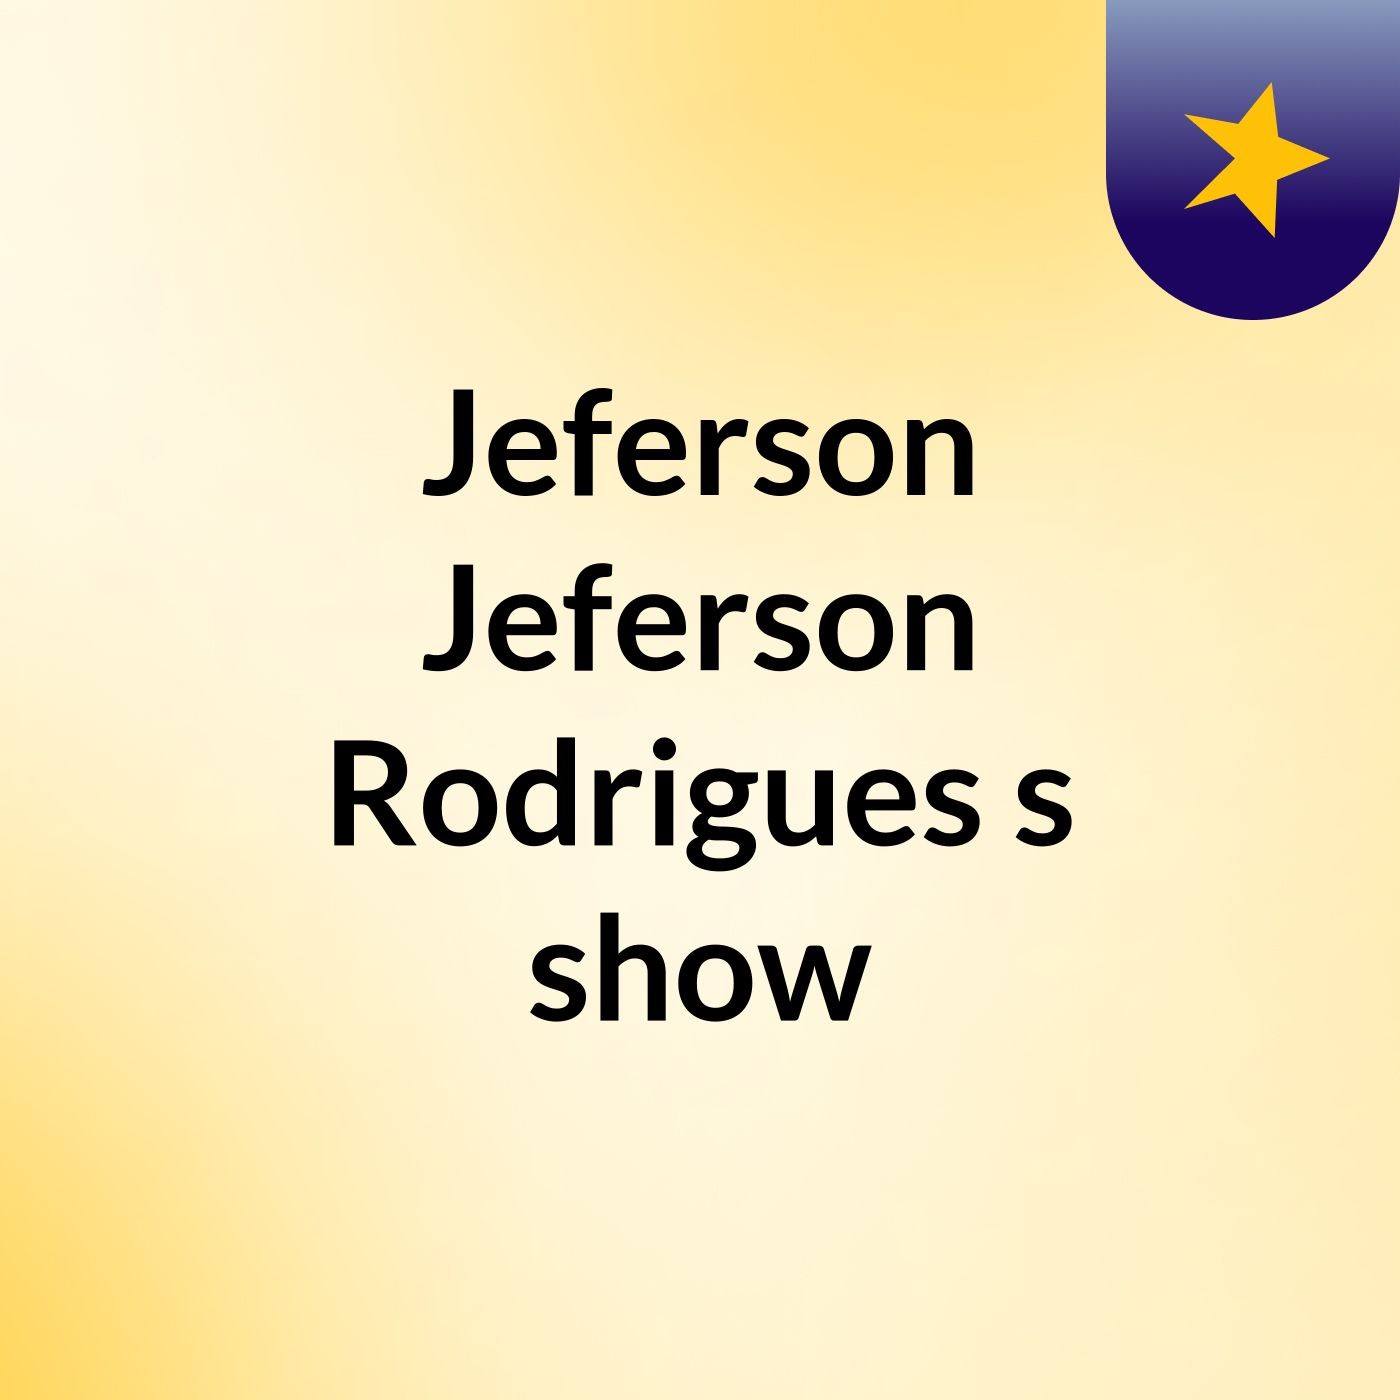 Jeferson Jeferson Rodrigues's show